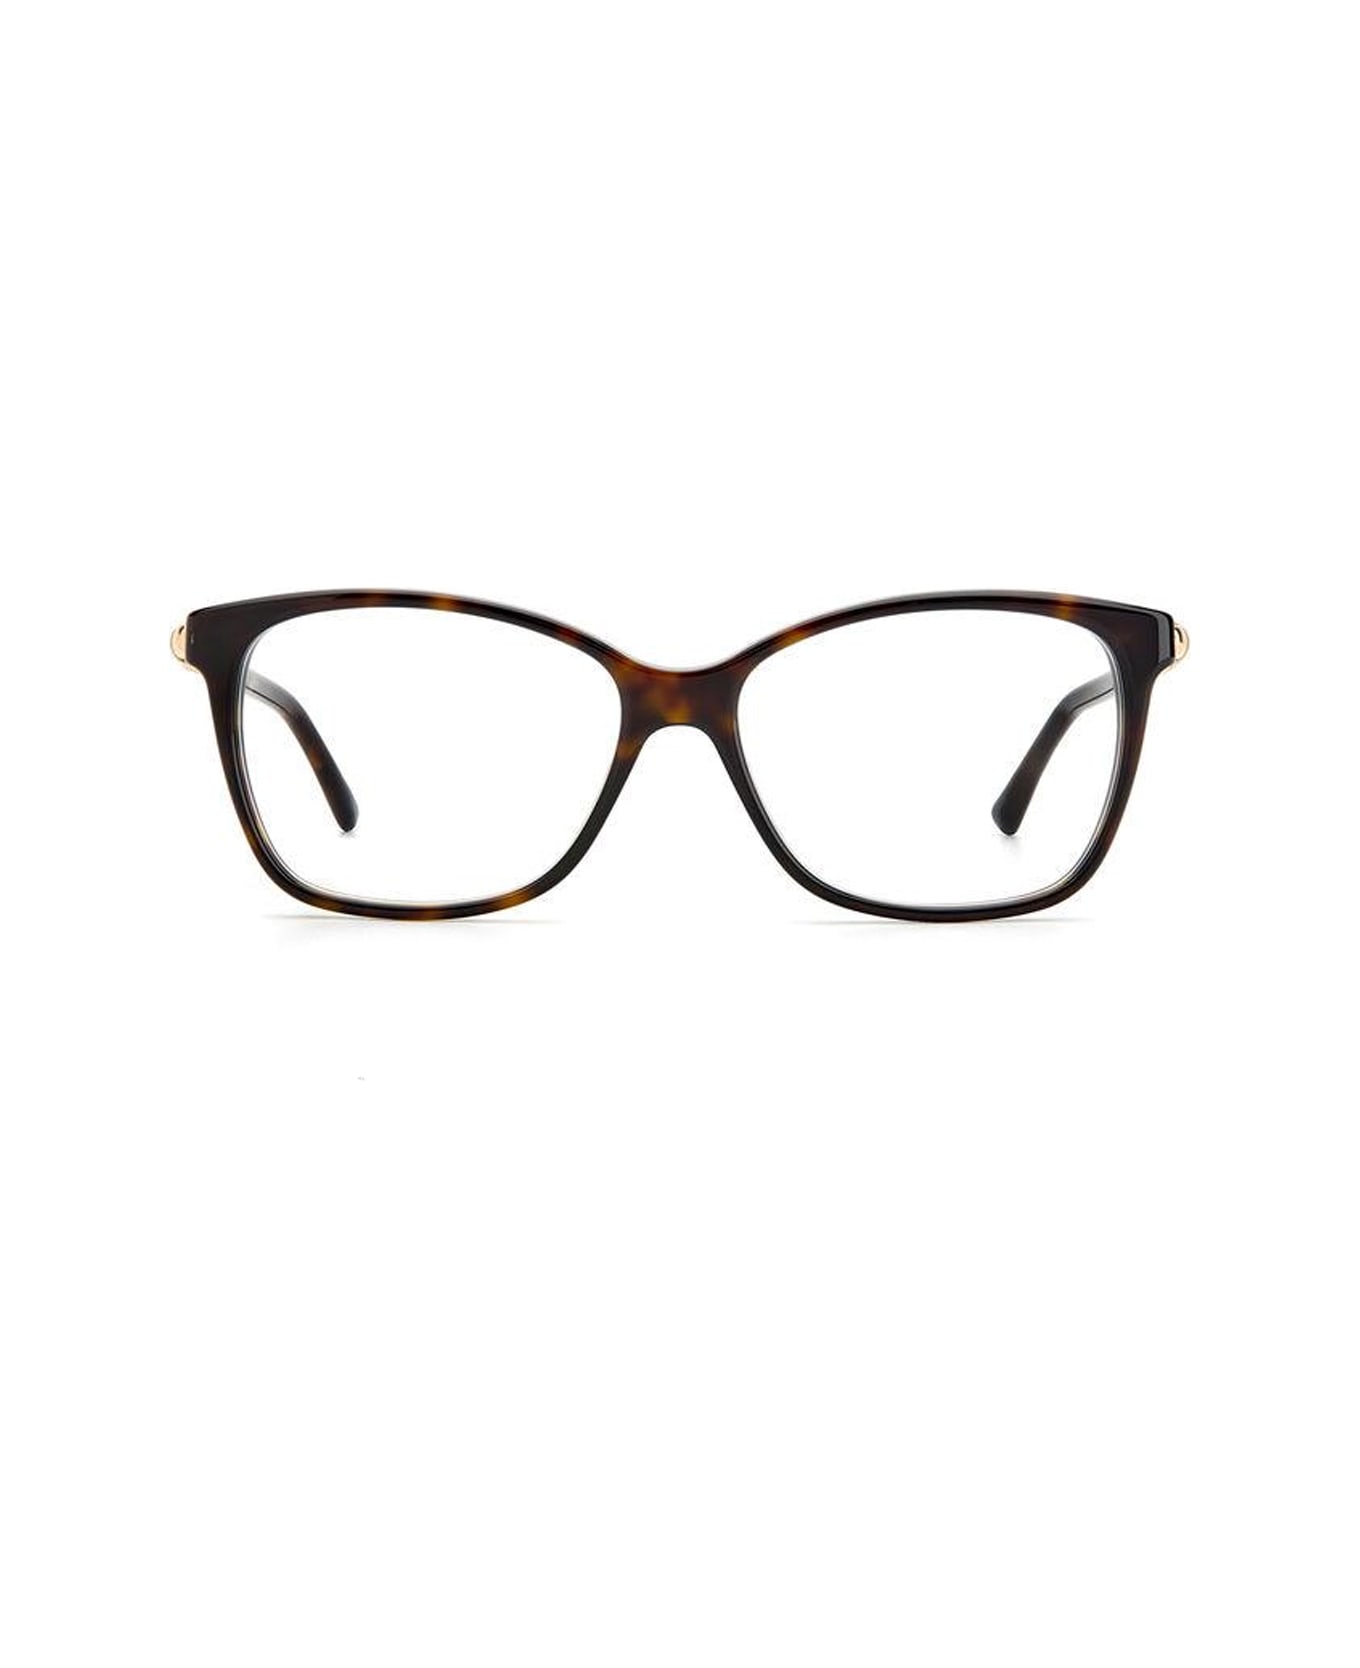 Jimmy Choo Eyewear Jc292 Qum/15 Glasses - Marrone アイウェア